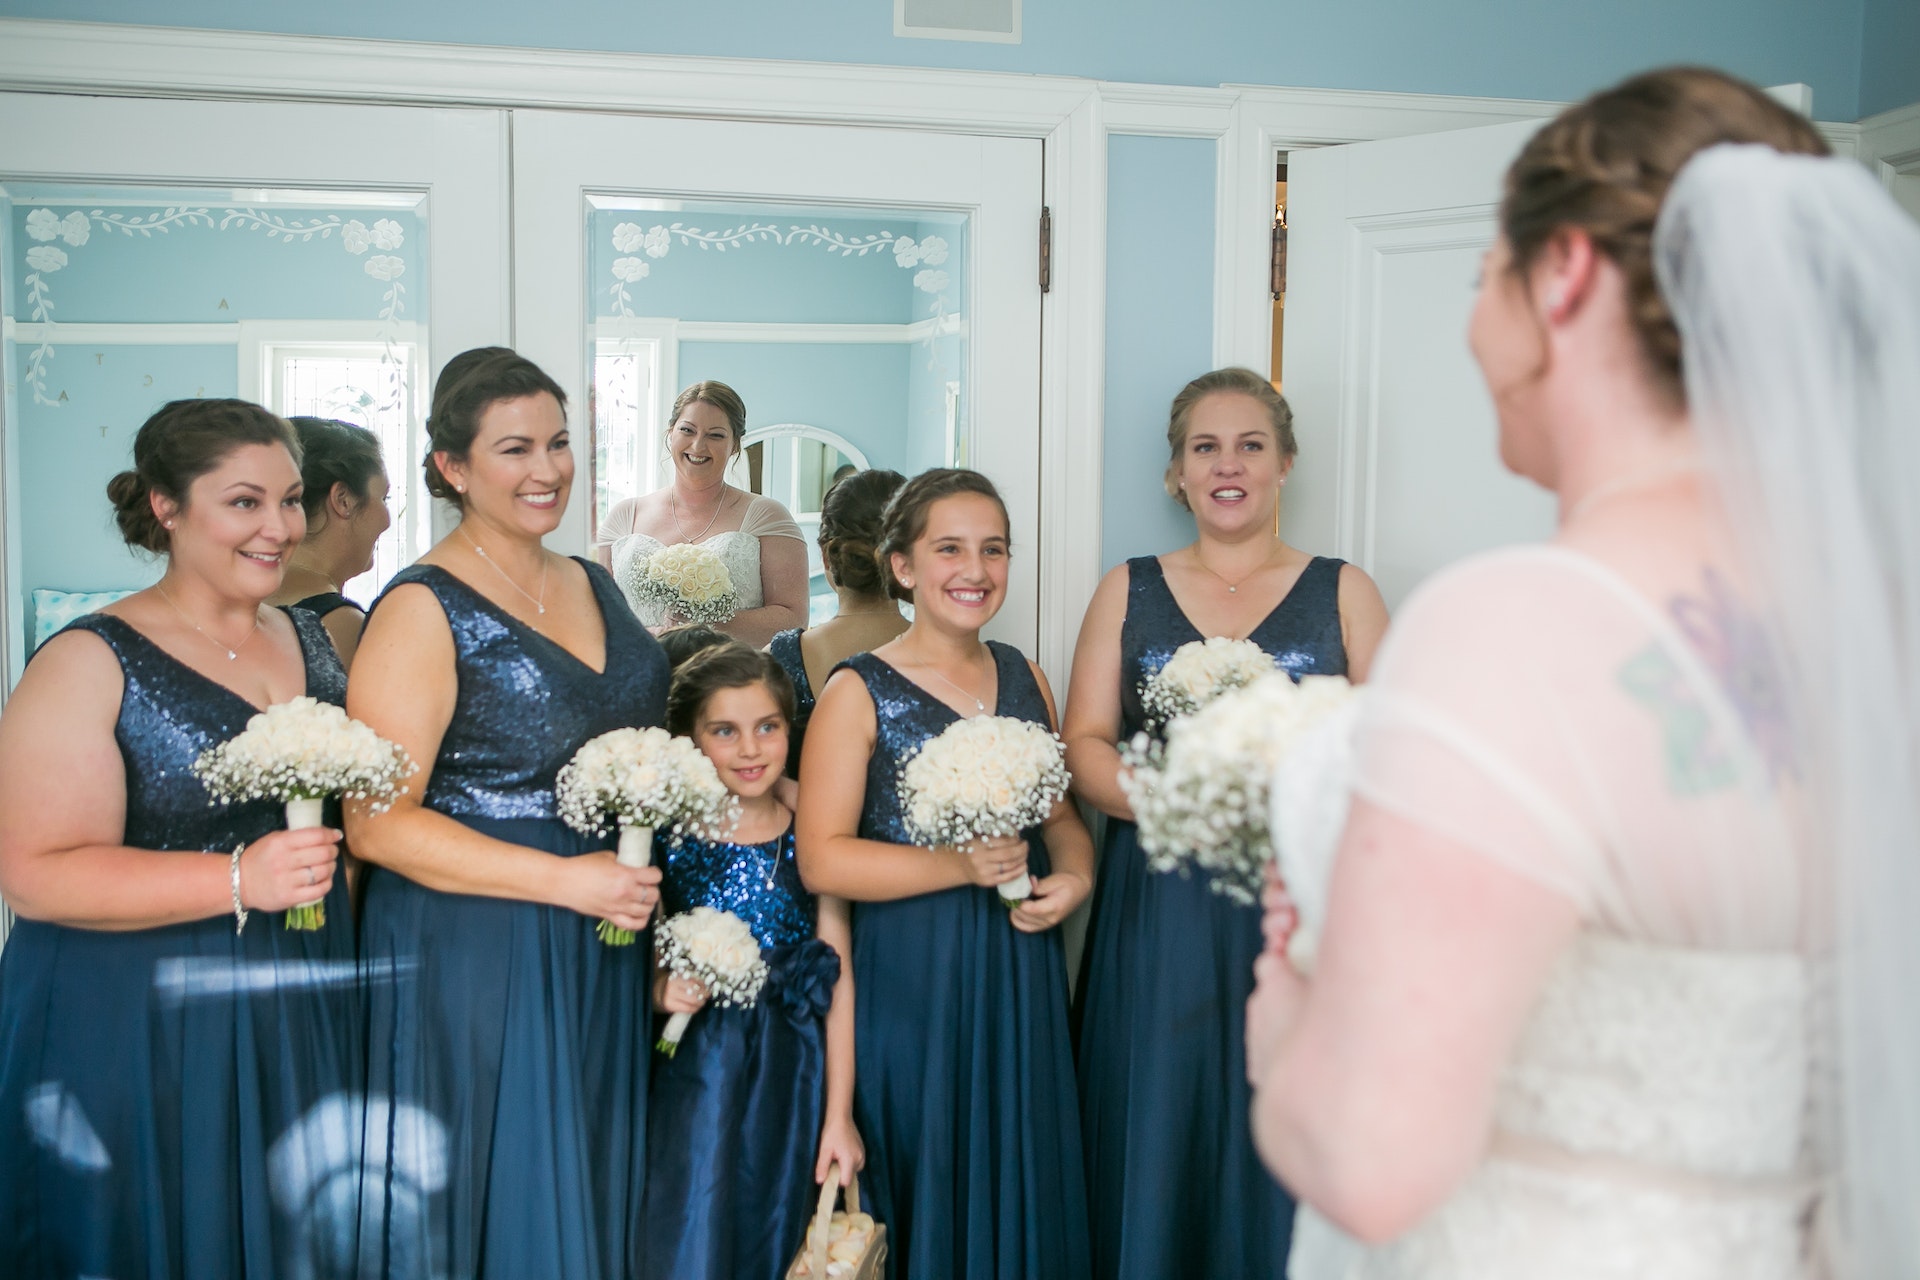 Una joven dama de honor de pie con otras damas de honor delante de la novia | Fuente: Pexels